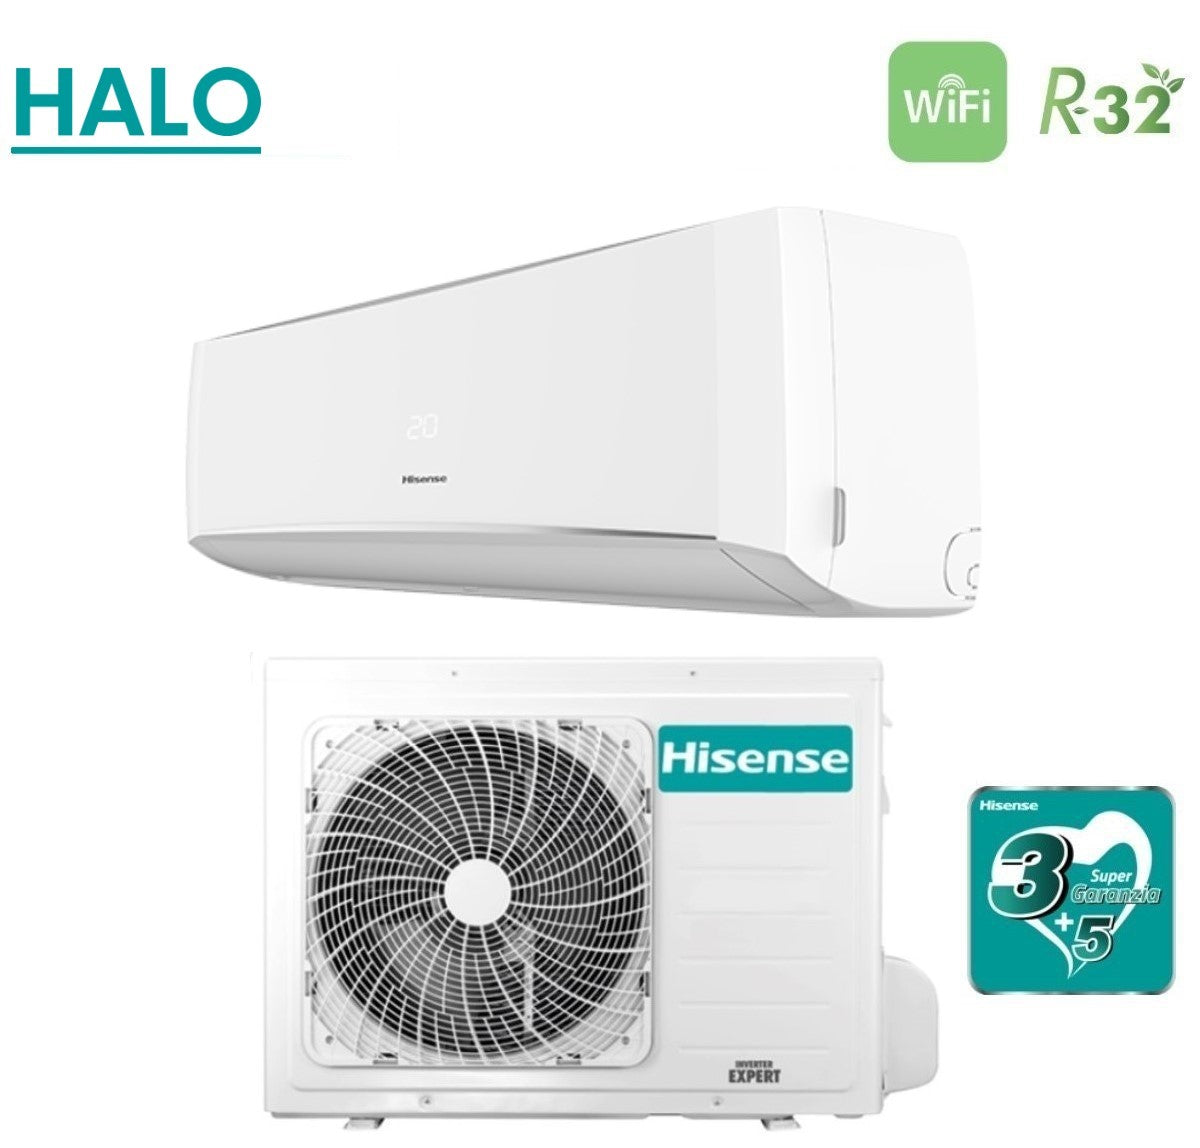 immagine-3-hisense-climatizzatore-condizionatore-hisense-inverter-serie-halo-9000-btu-cbyr0905g-cbyr0905w-r-32-wi-fi-optional-aa